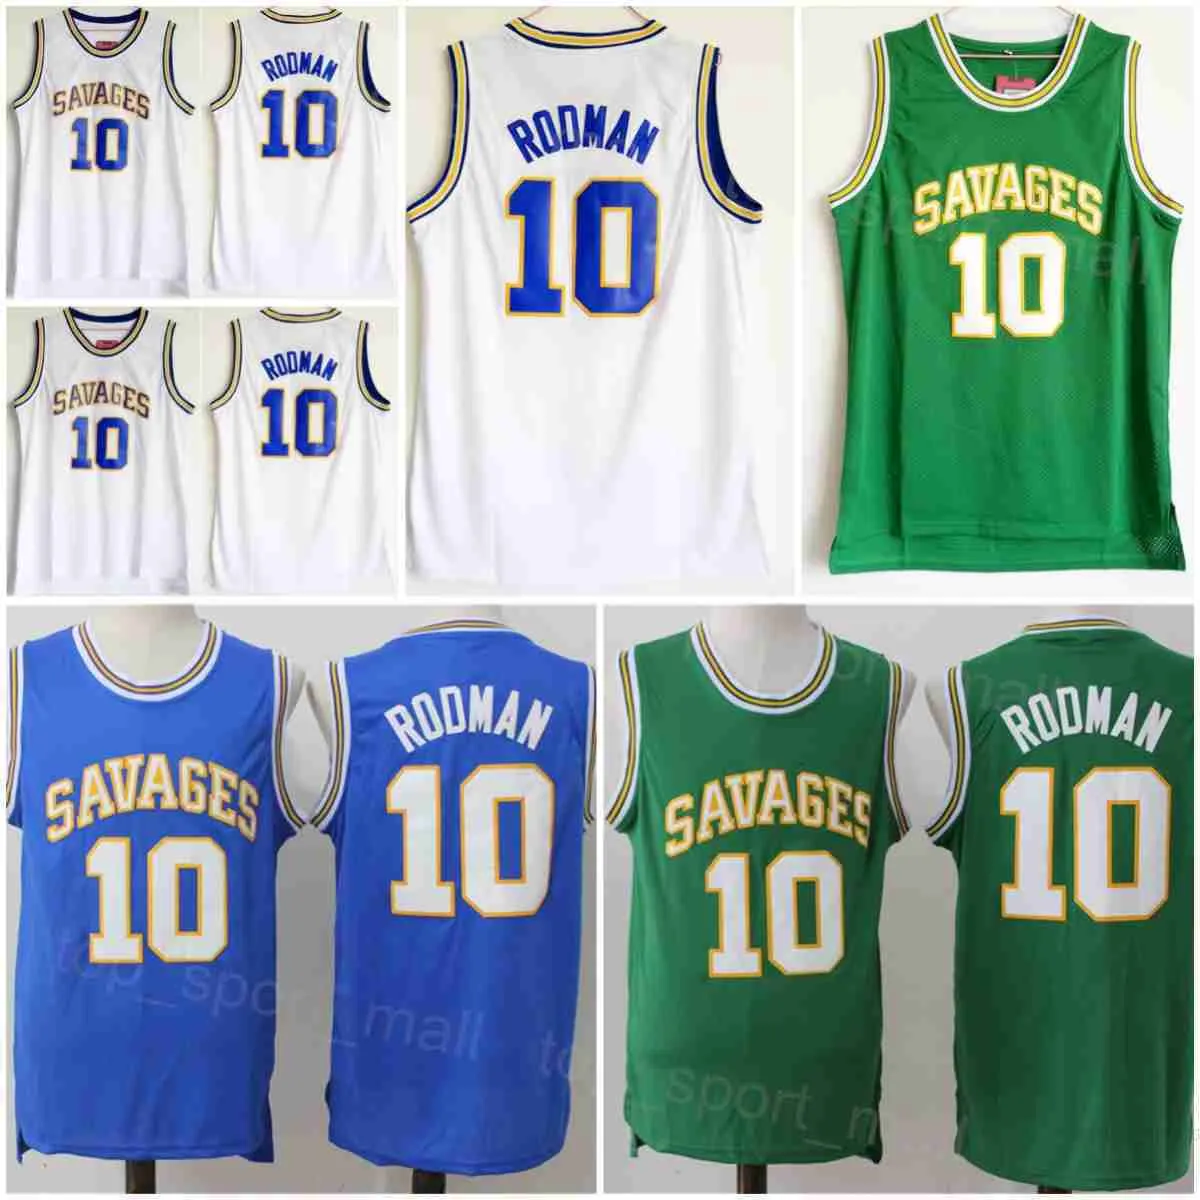 Оклахома Savages Баскетбол Деннис Родман Джерси 10 старшеклассников Команда университета колледжа зеленый белый синий все сшиты для спортивных фанатов, дышащая рубашка NCAA NCAA